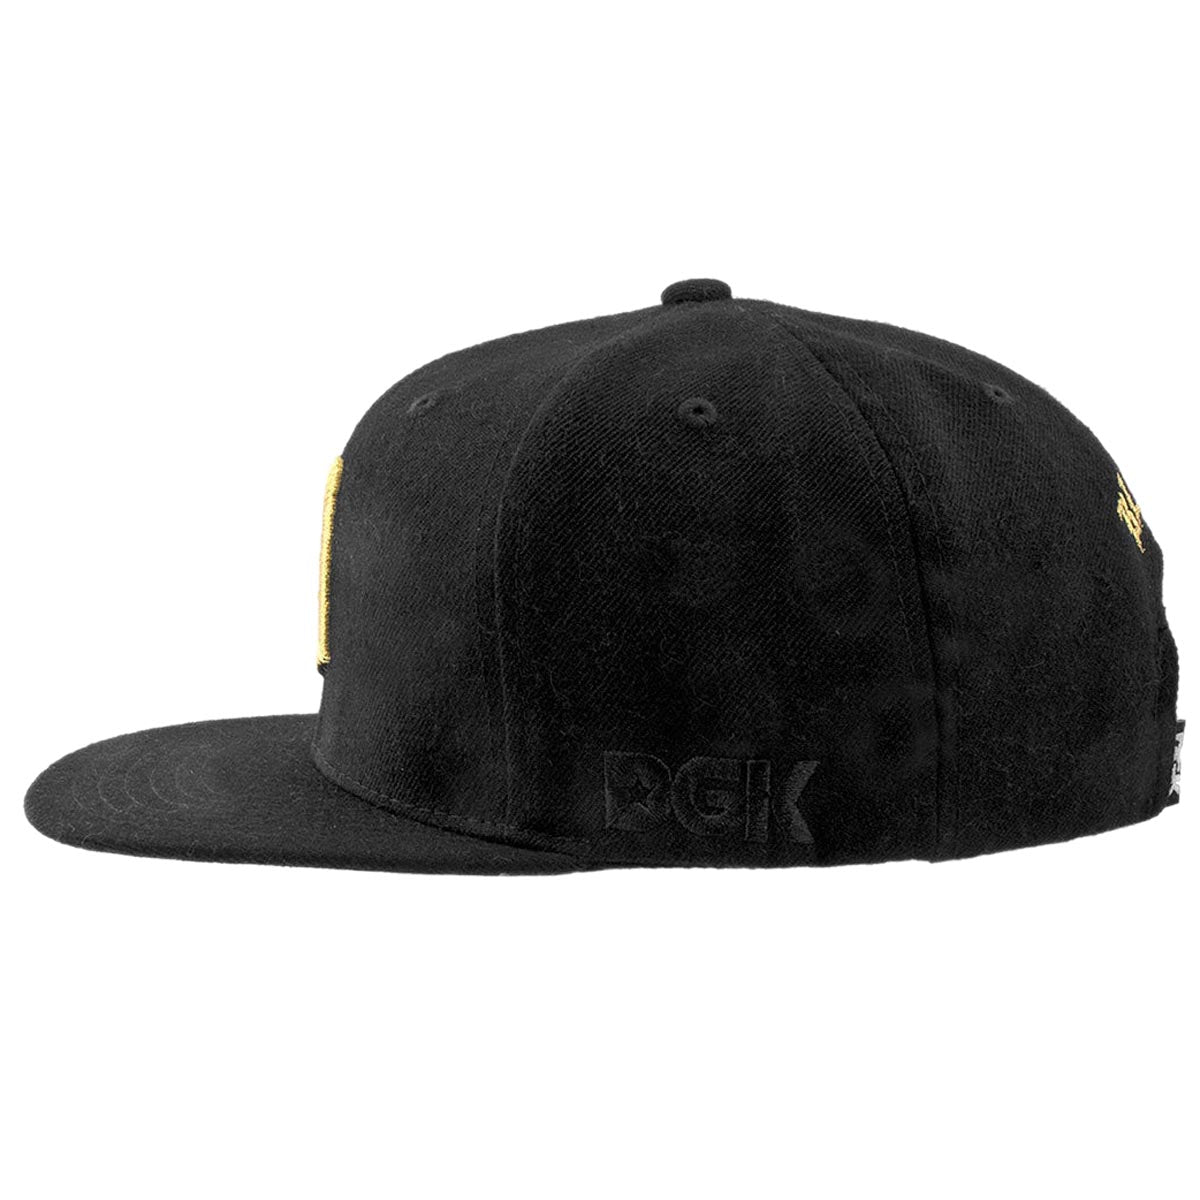 DGK Thorn Snapback Hat - Black image 4